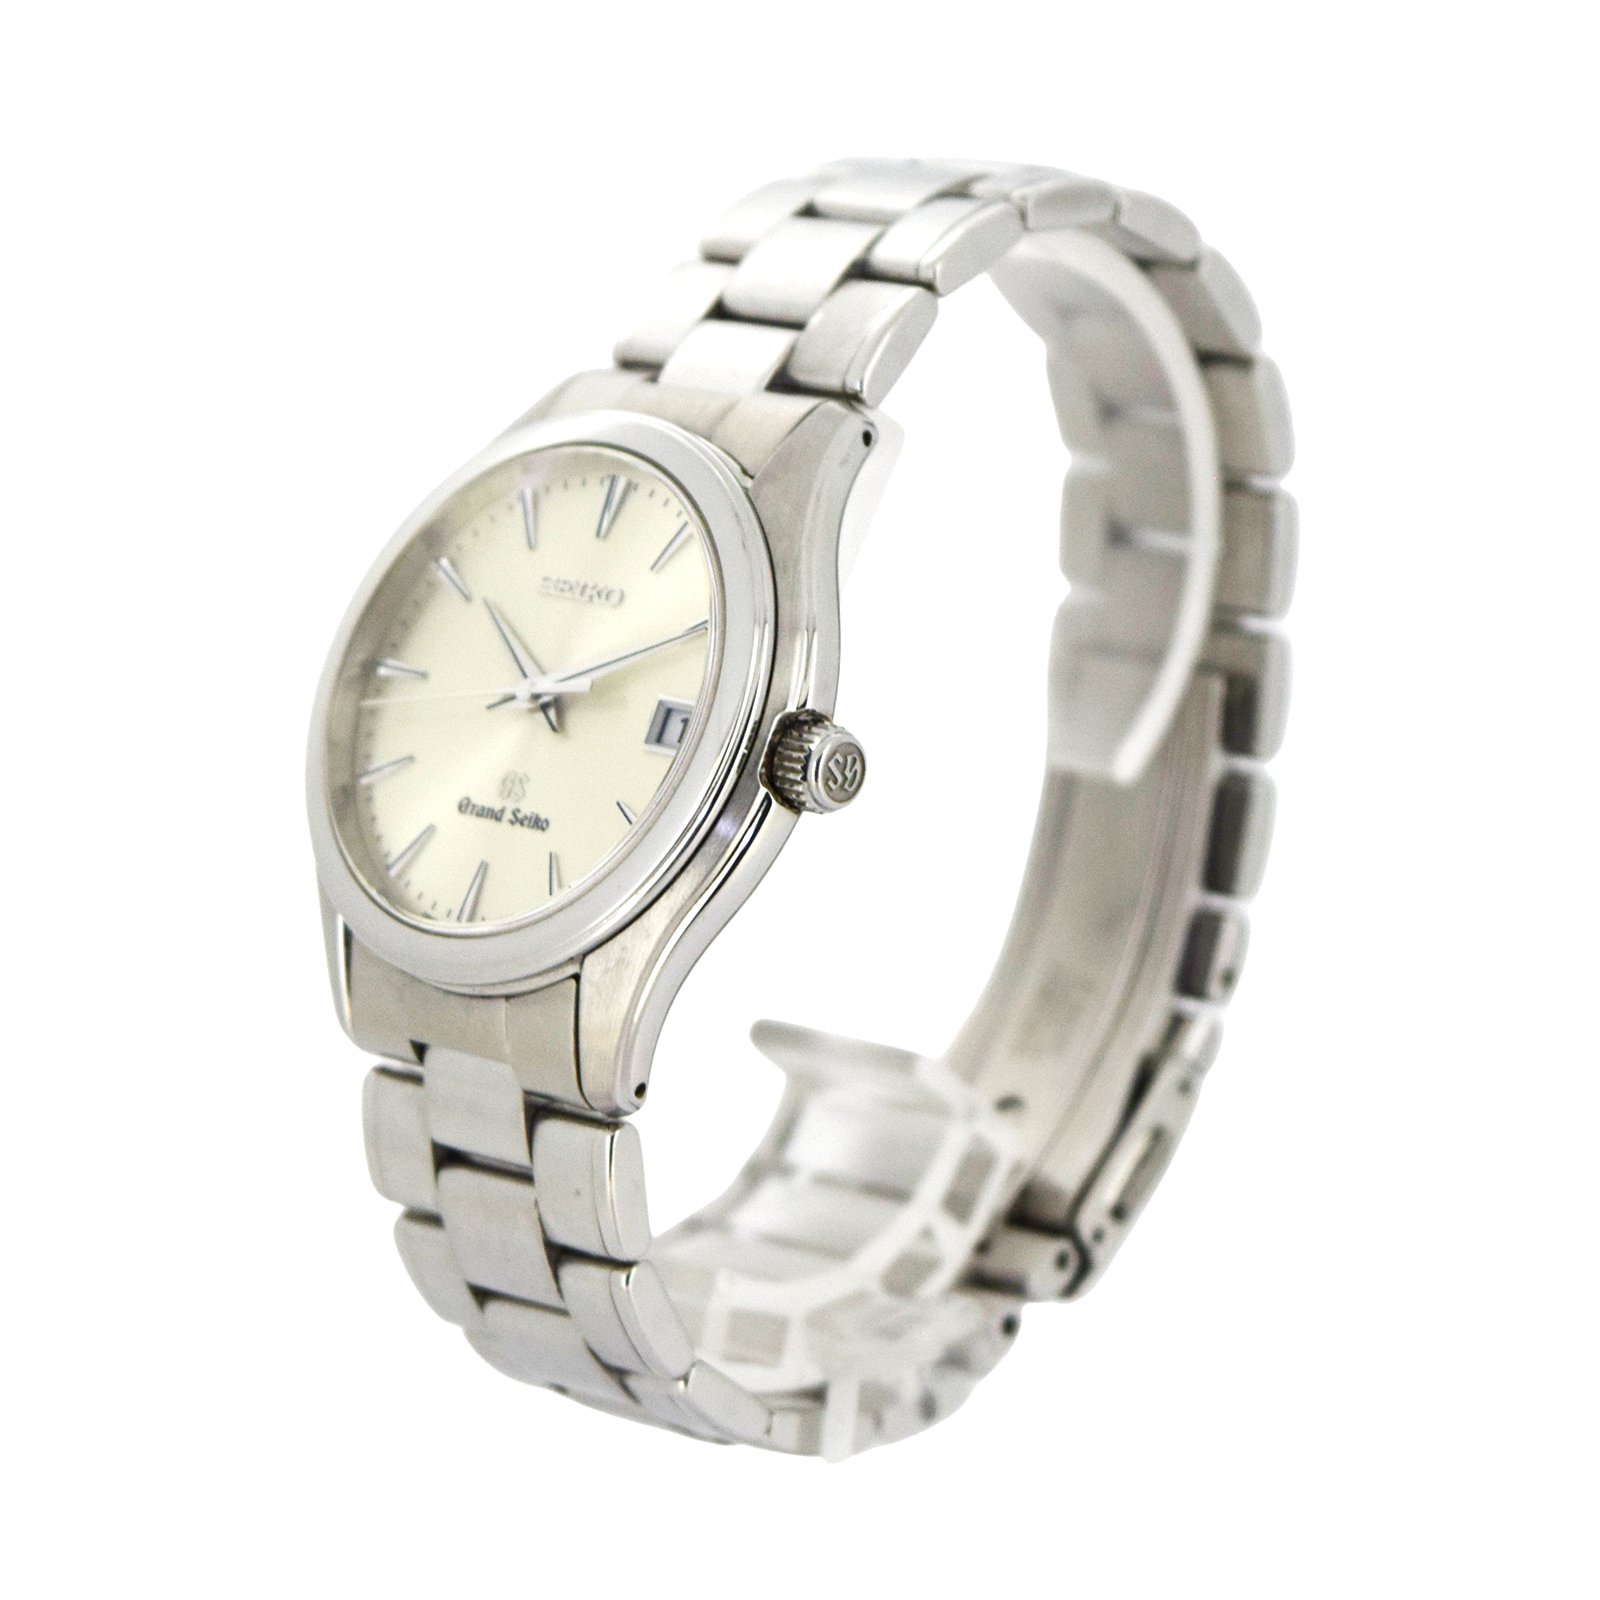 SEIKO セイコー グランドセイコー SBGX005 9F62-0A10 メンズ 腕時計